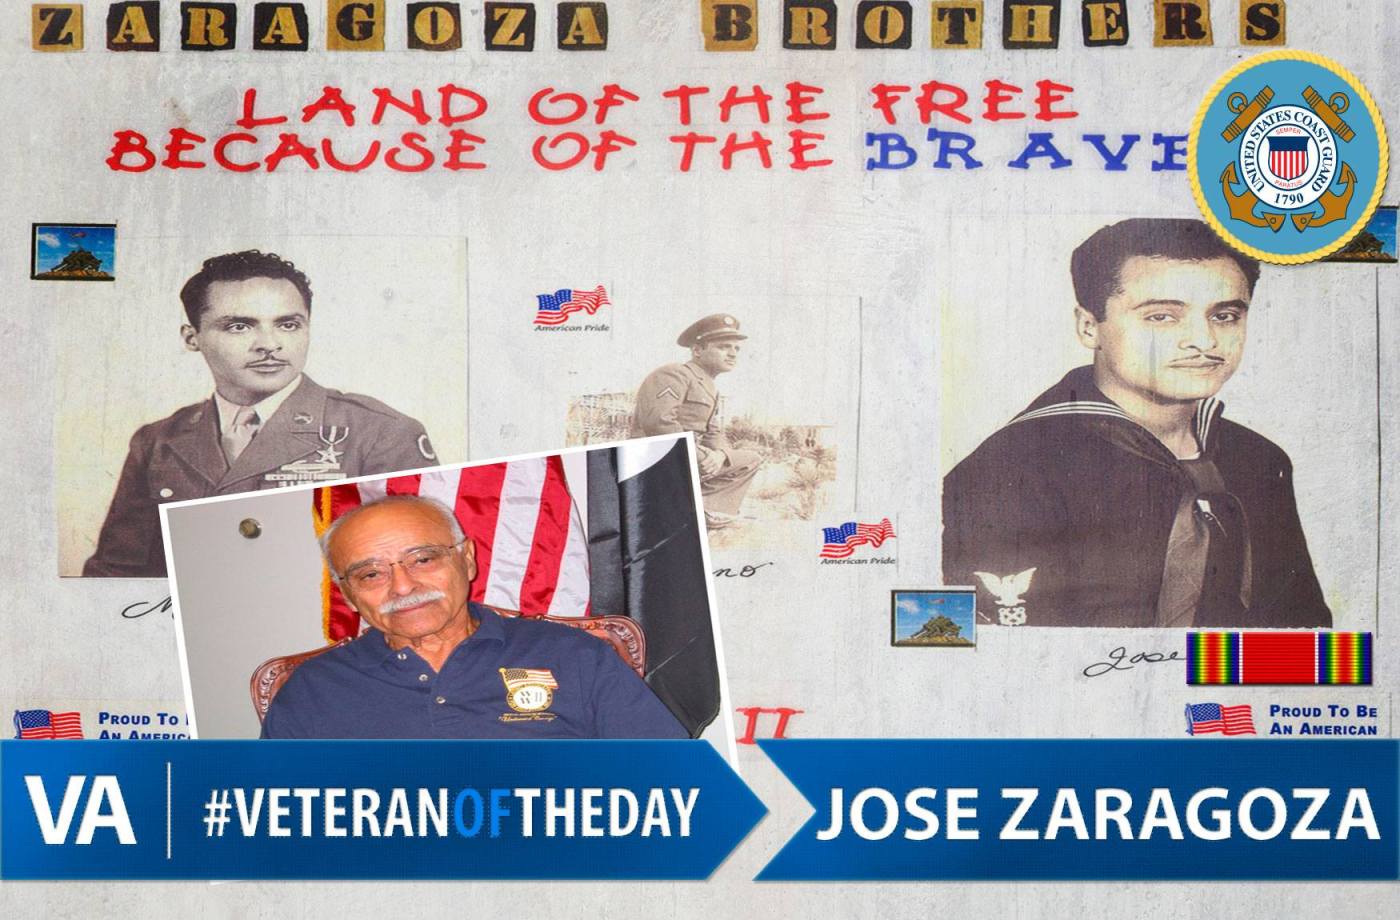 Veteran of the Day Jose Zaragoza